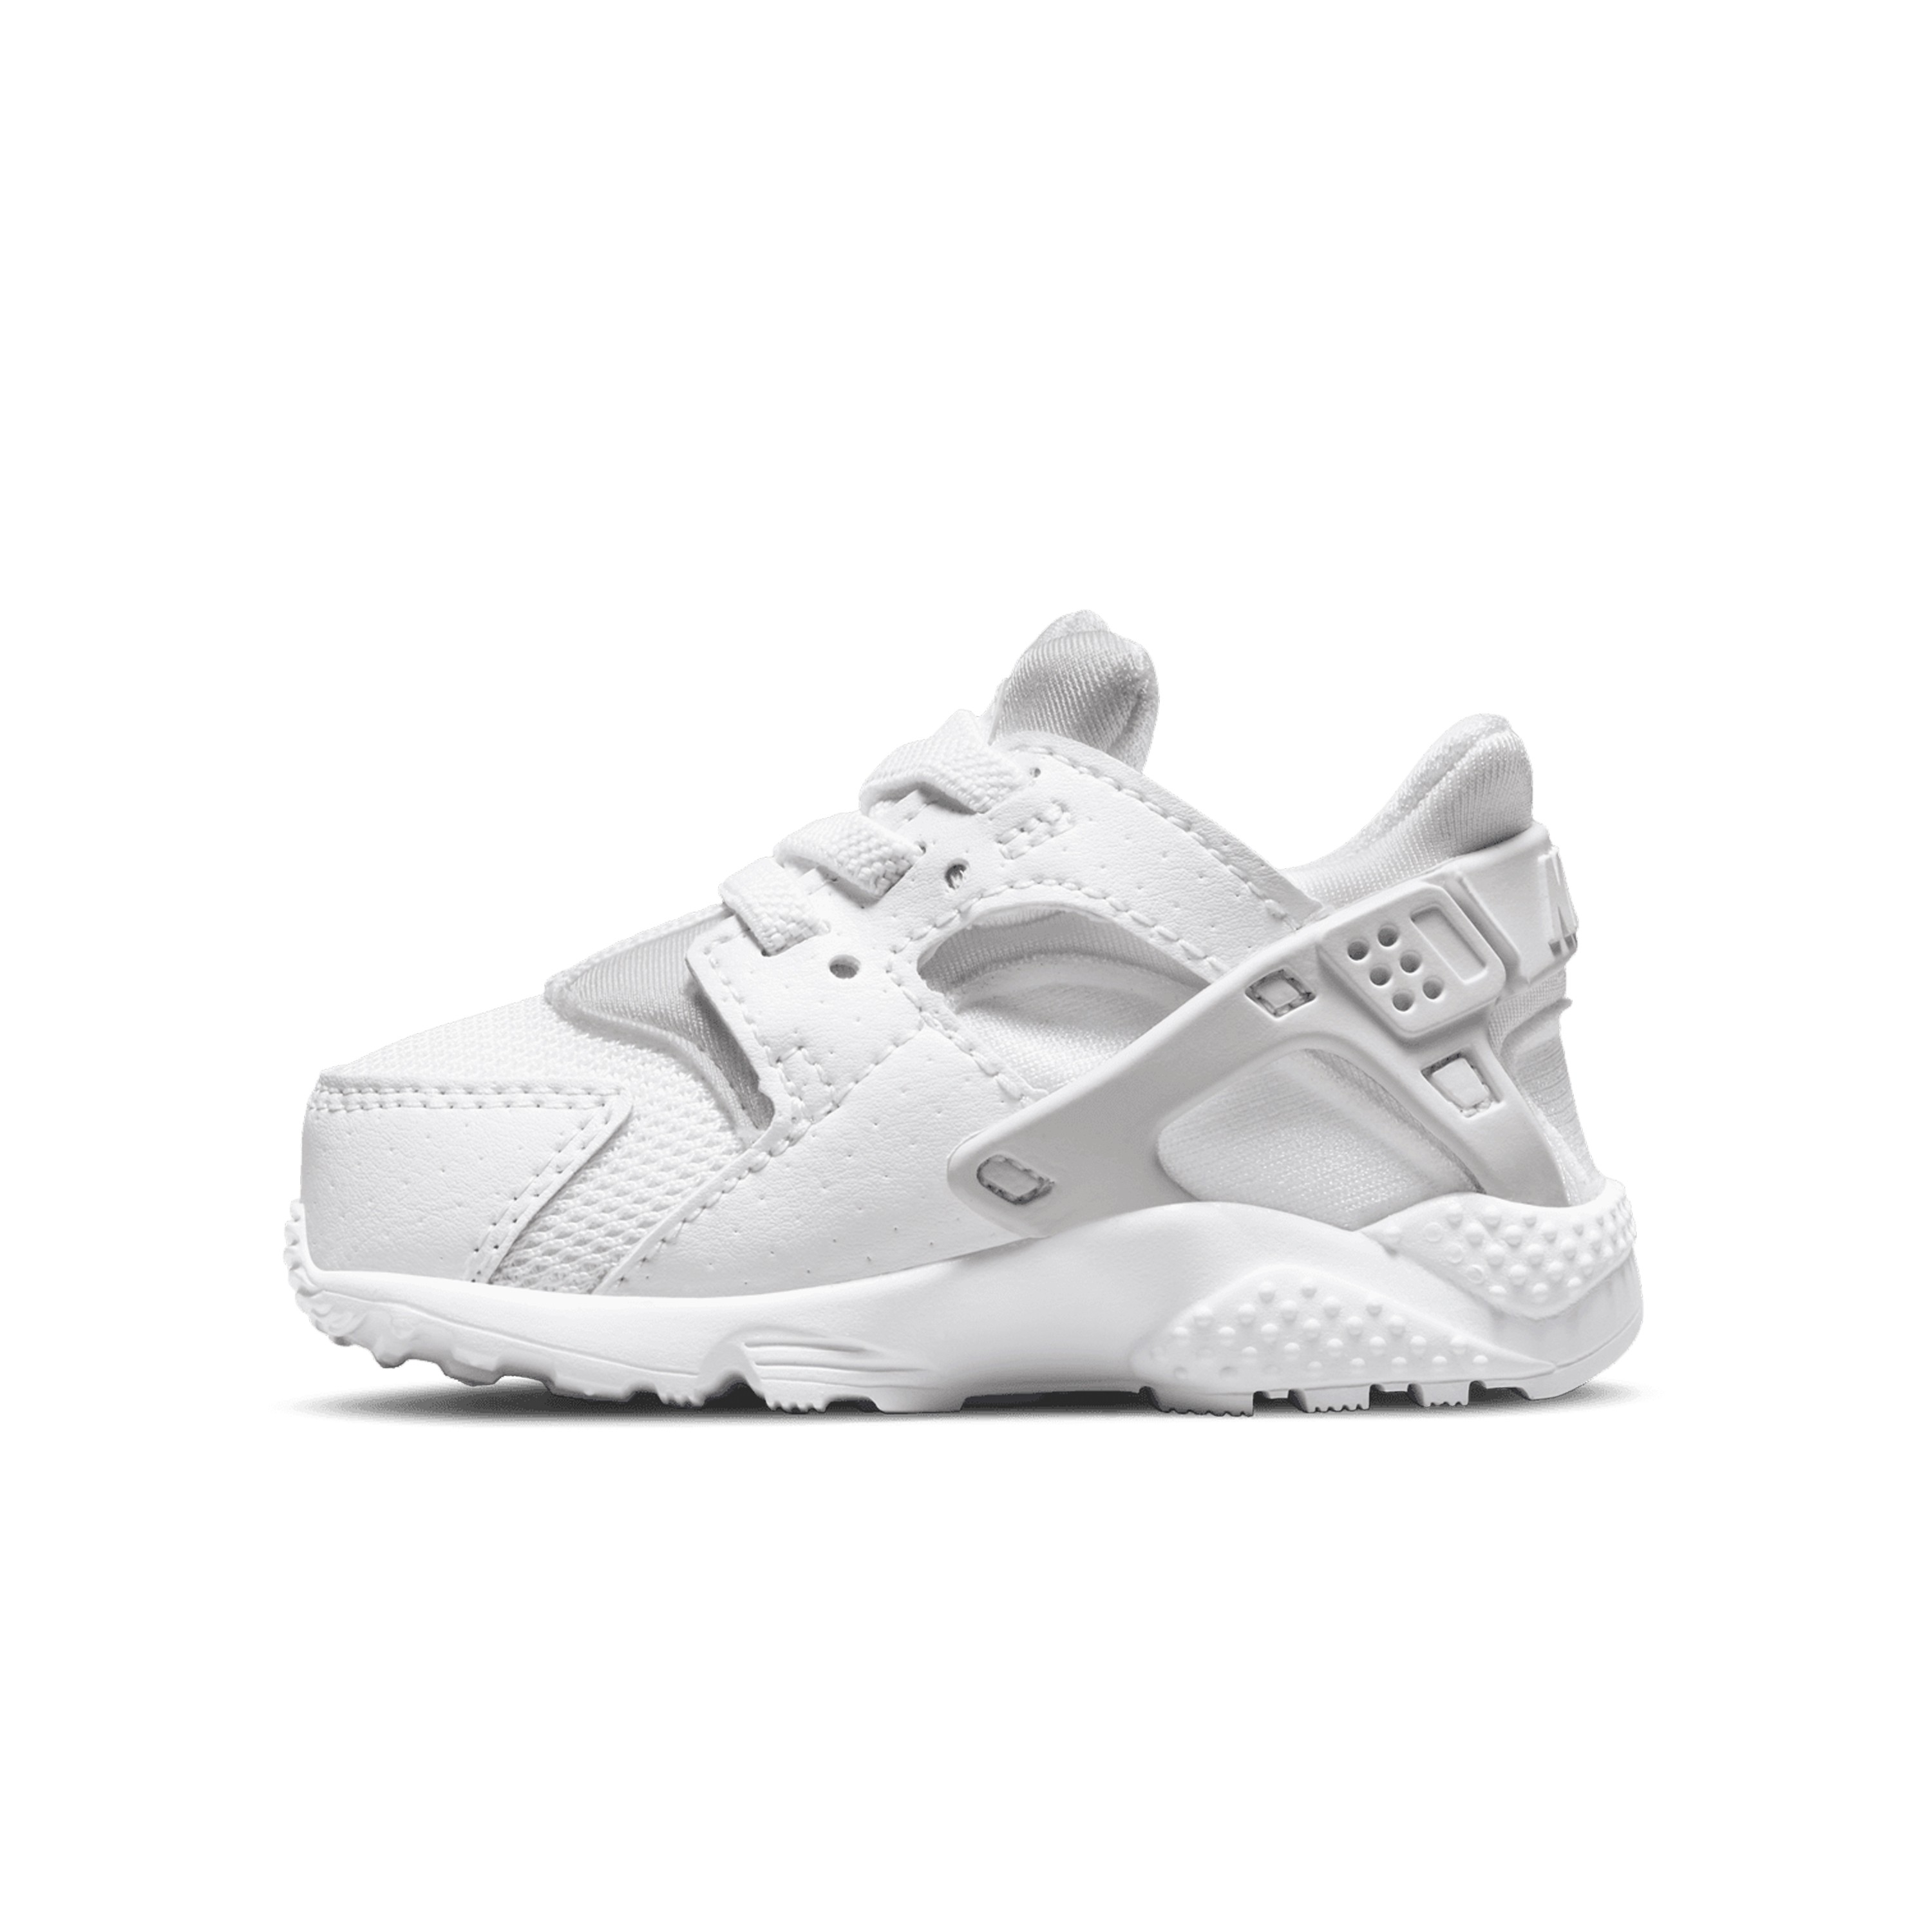 Toddler Nike Huarache Run TD (White/White-Pure Platinum) - 704950-110 ...